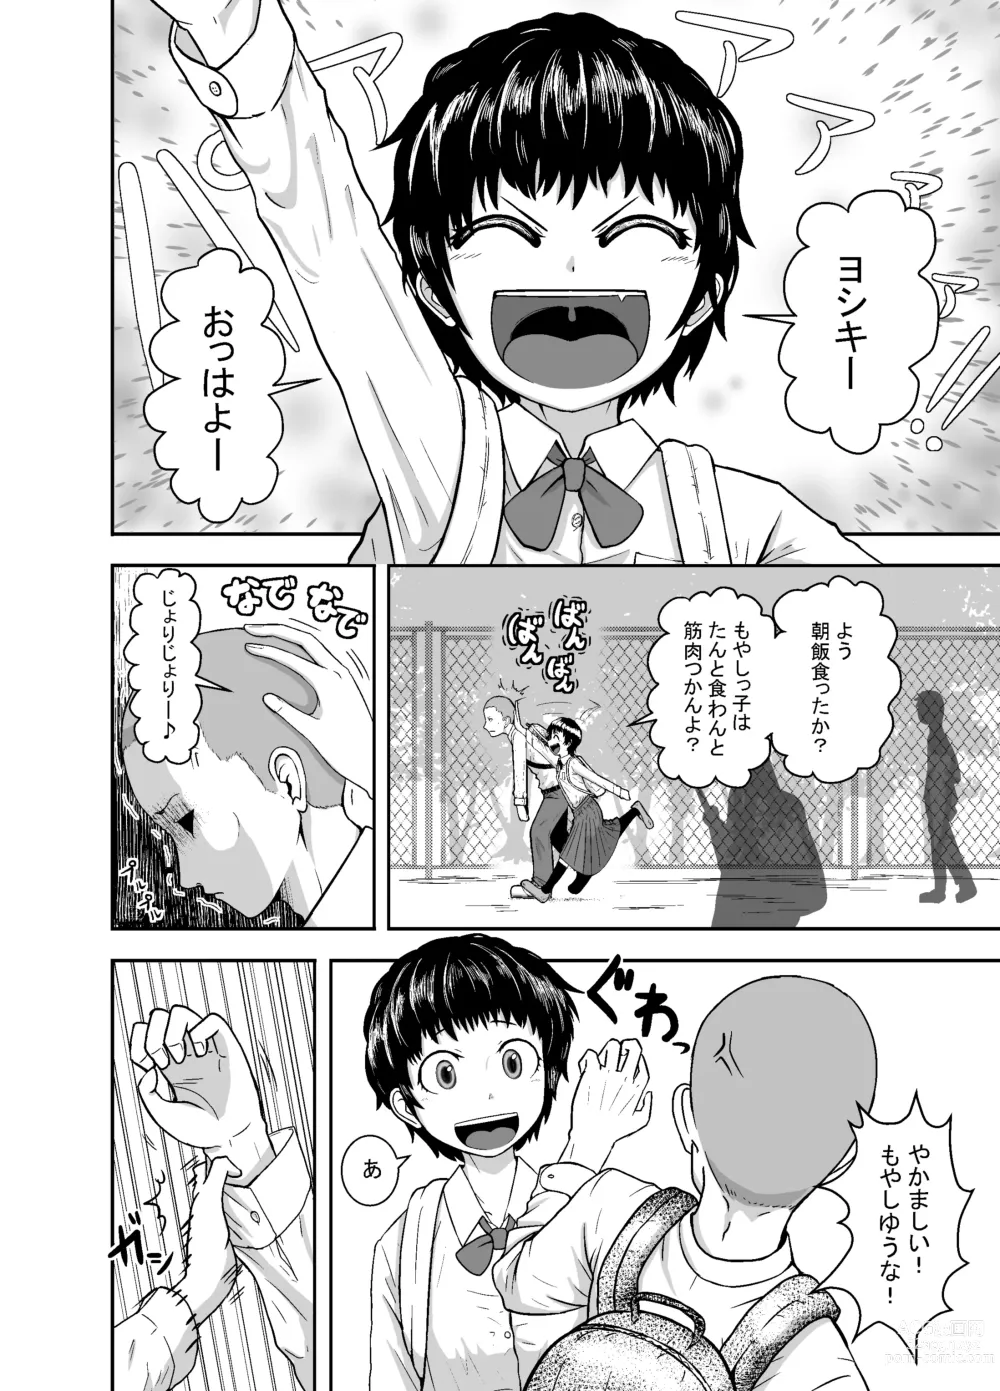 Page 3 of doujinshi Kimi ga Yarareru Kurai nara ~Genkikko Crisis~